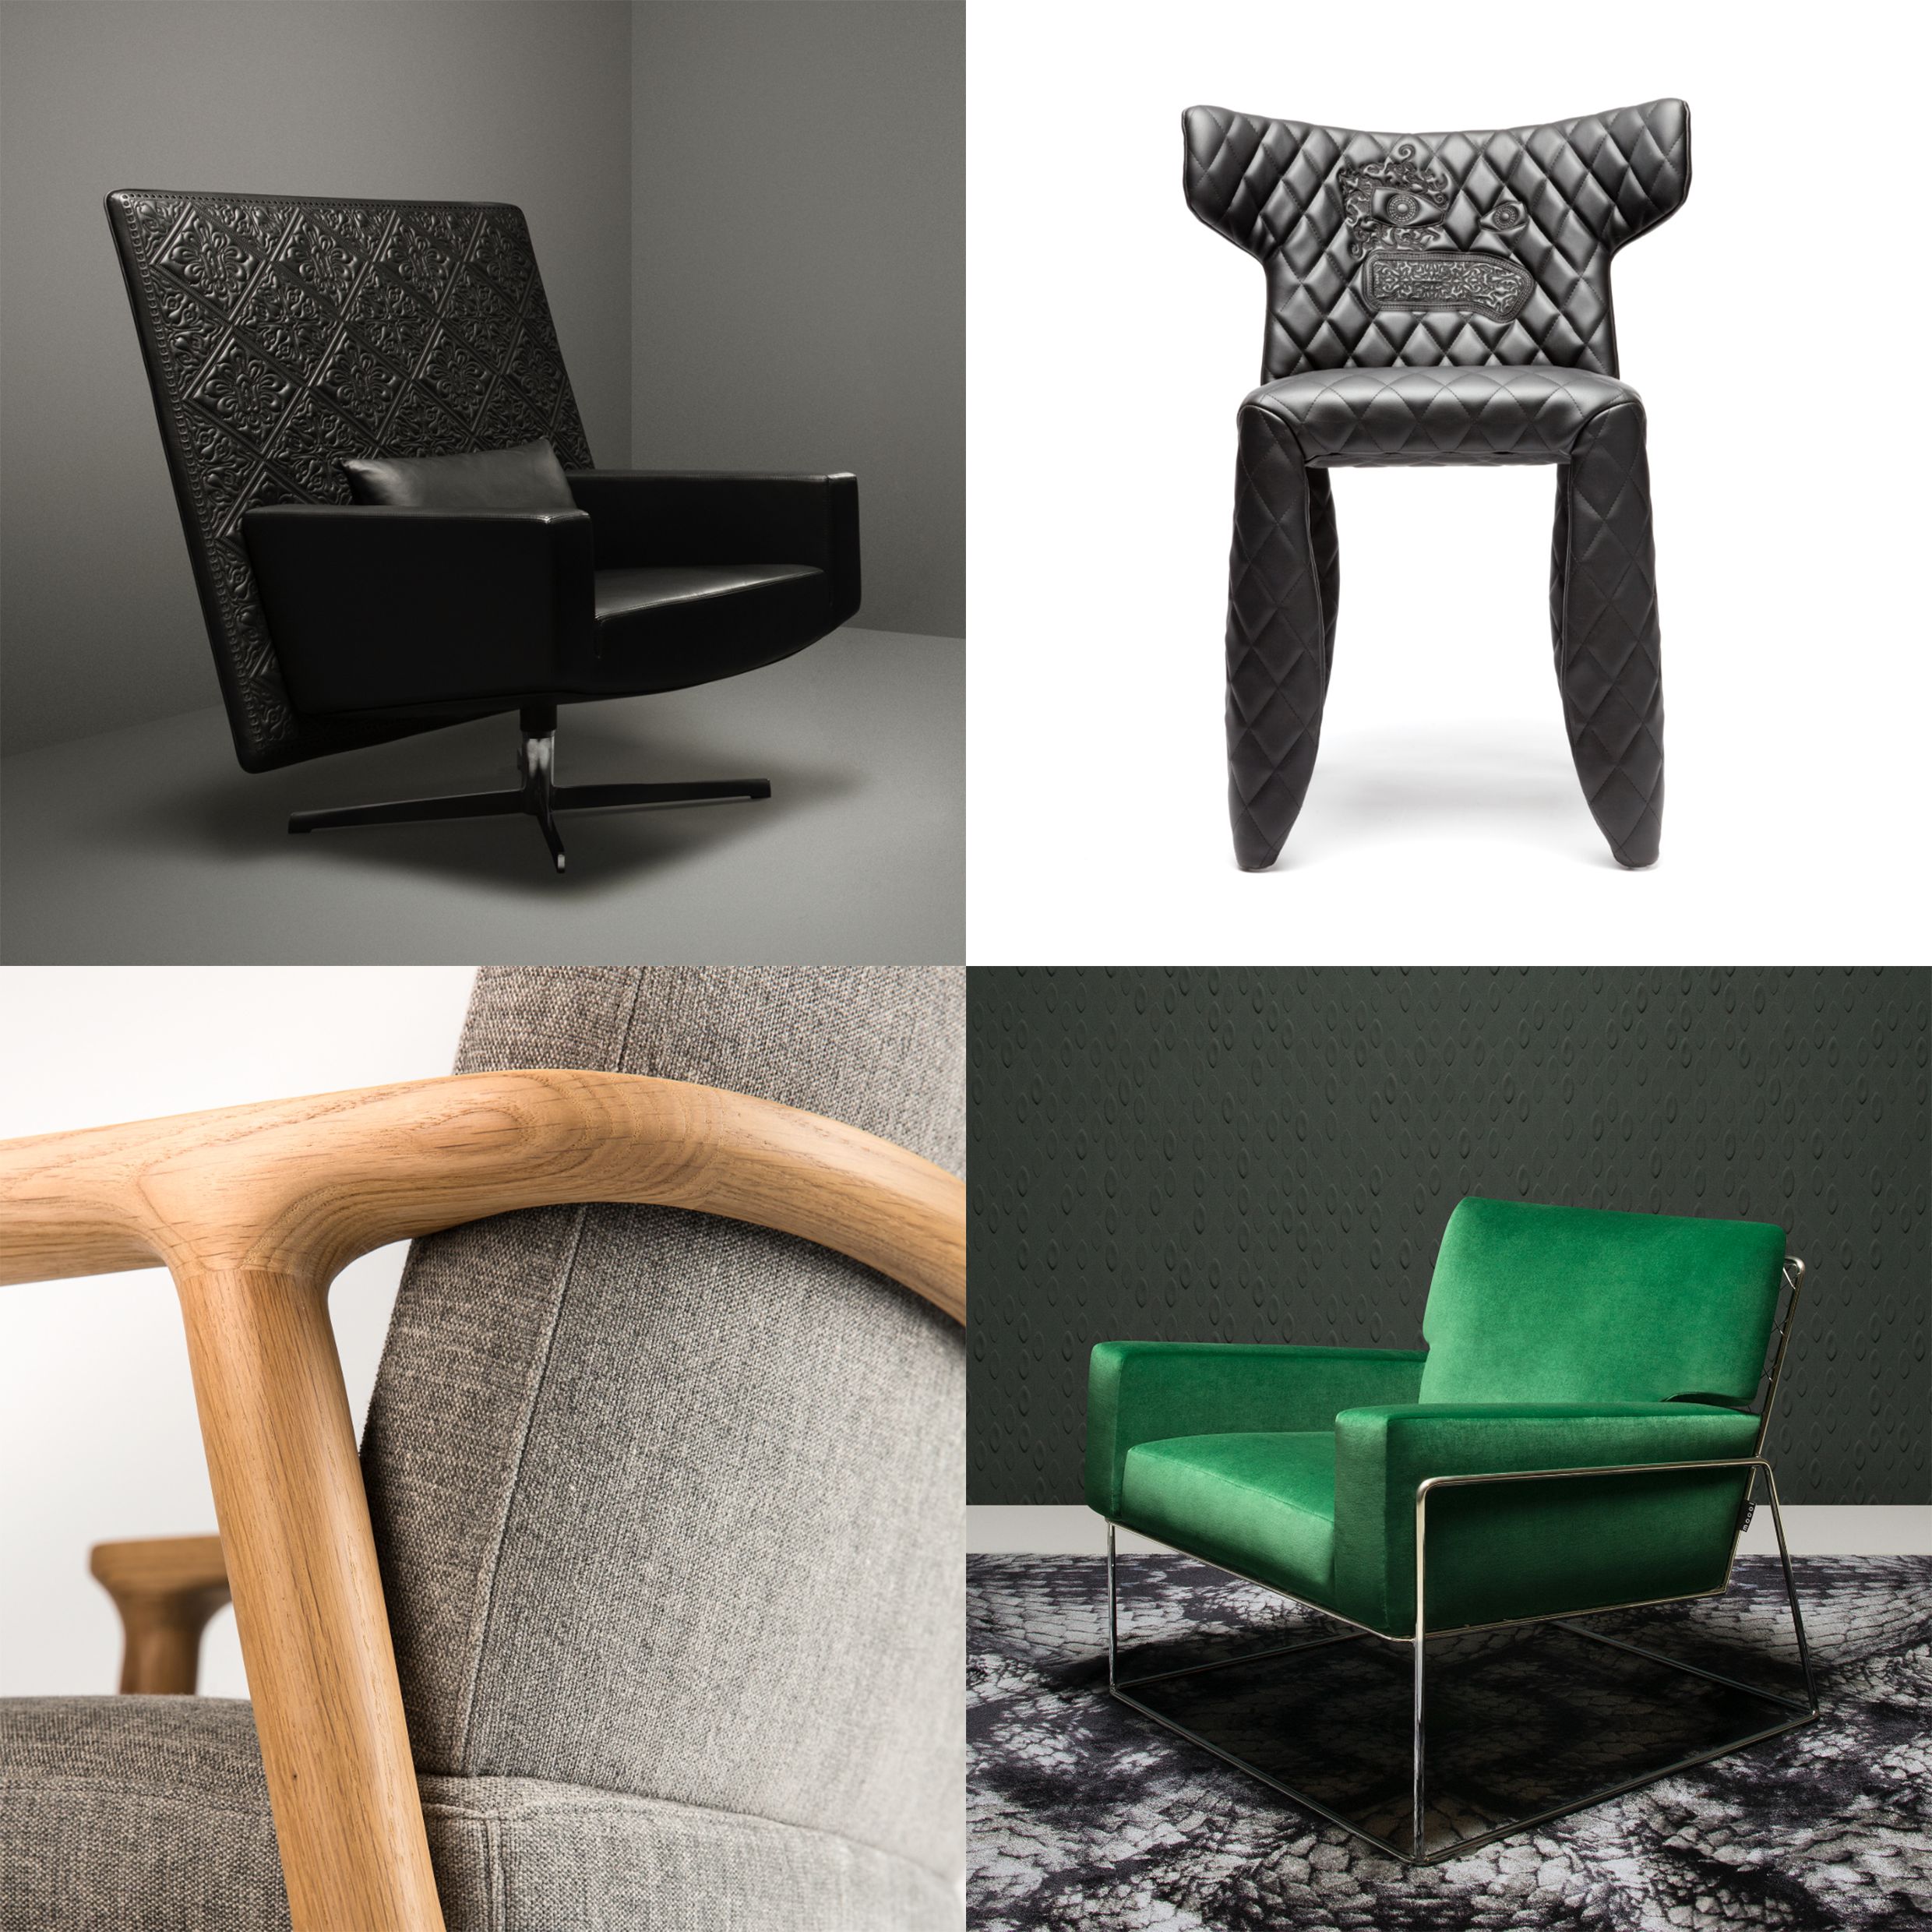 Marcel Wanders Studio'nun Moooi için tasarladığı oturma elemanları.